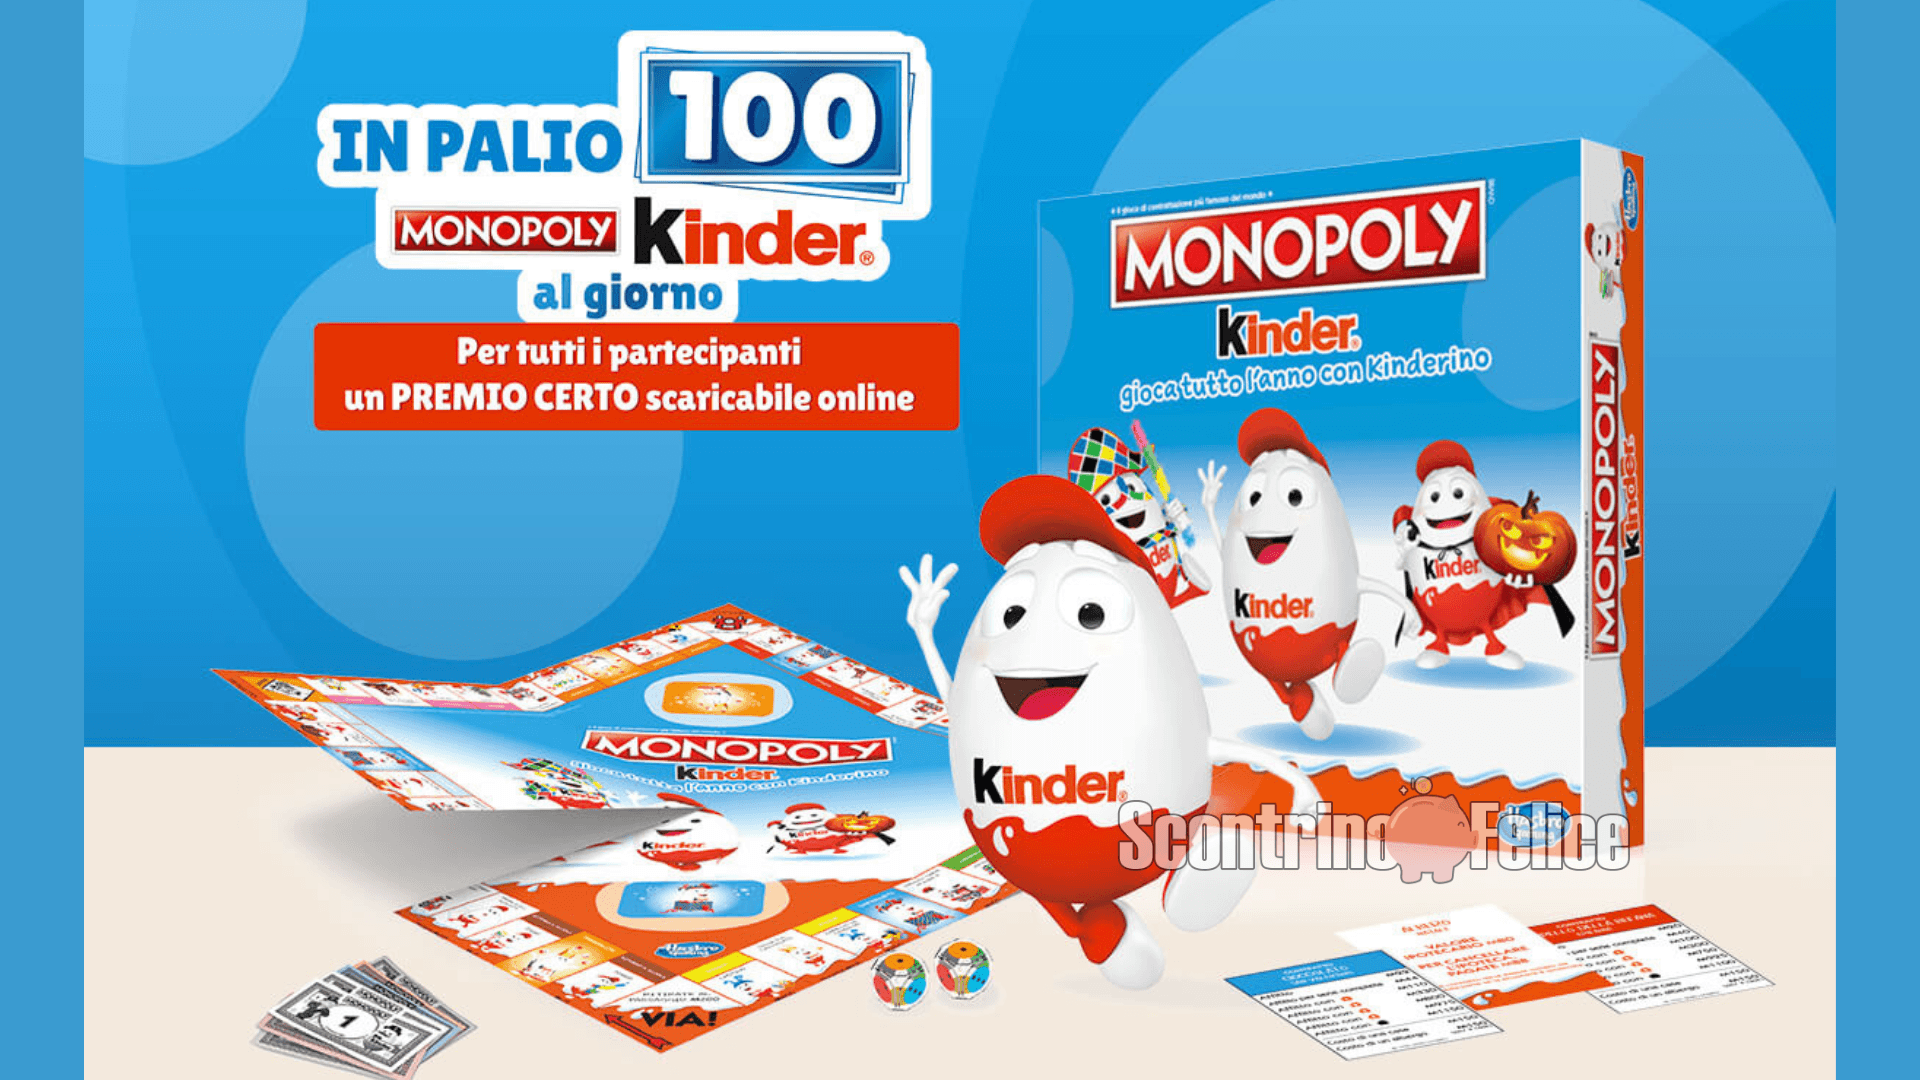 Concorso Kinder: in palio 100 Monopoly ogni giorno! 7